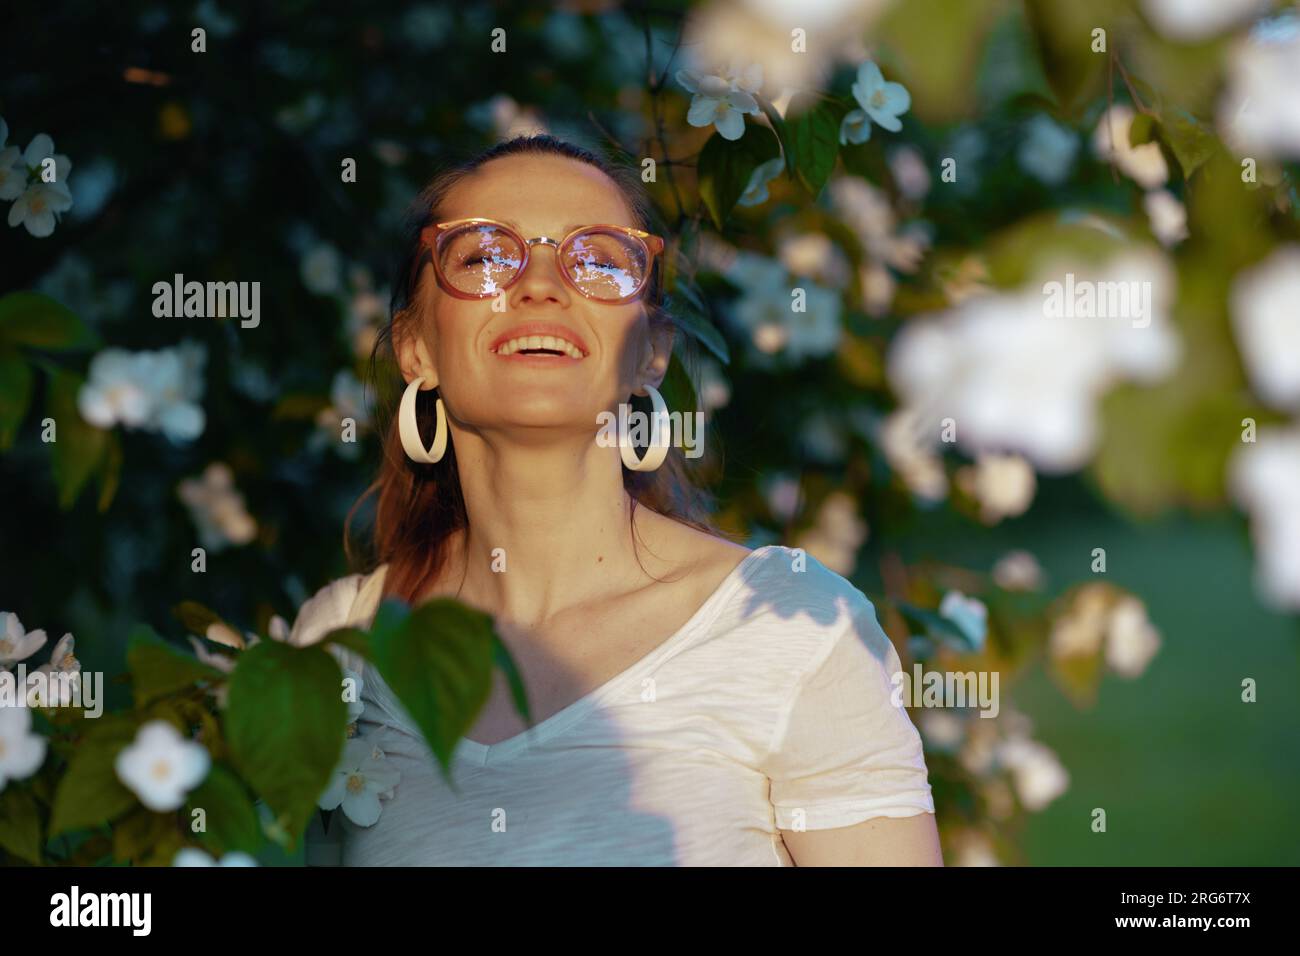 Heure d'été. heureuse femme d'âge moyen élégante en chemise blanche avec des lunettes près de l'arbre à fleurs. Banque D'Images